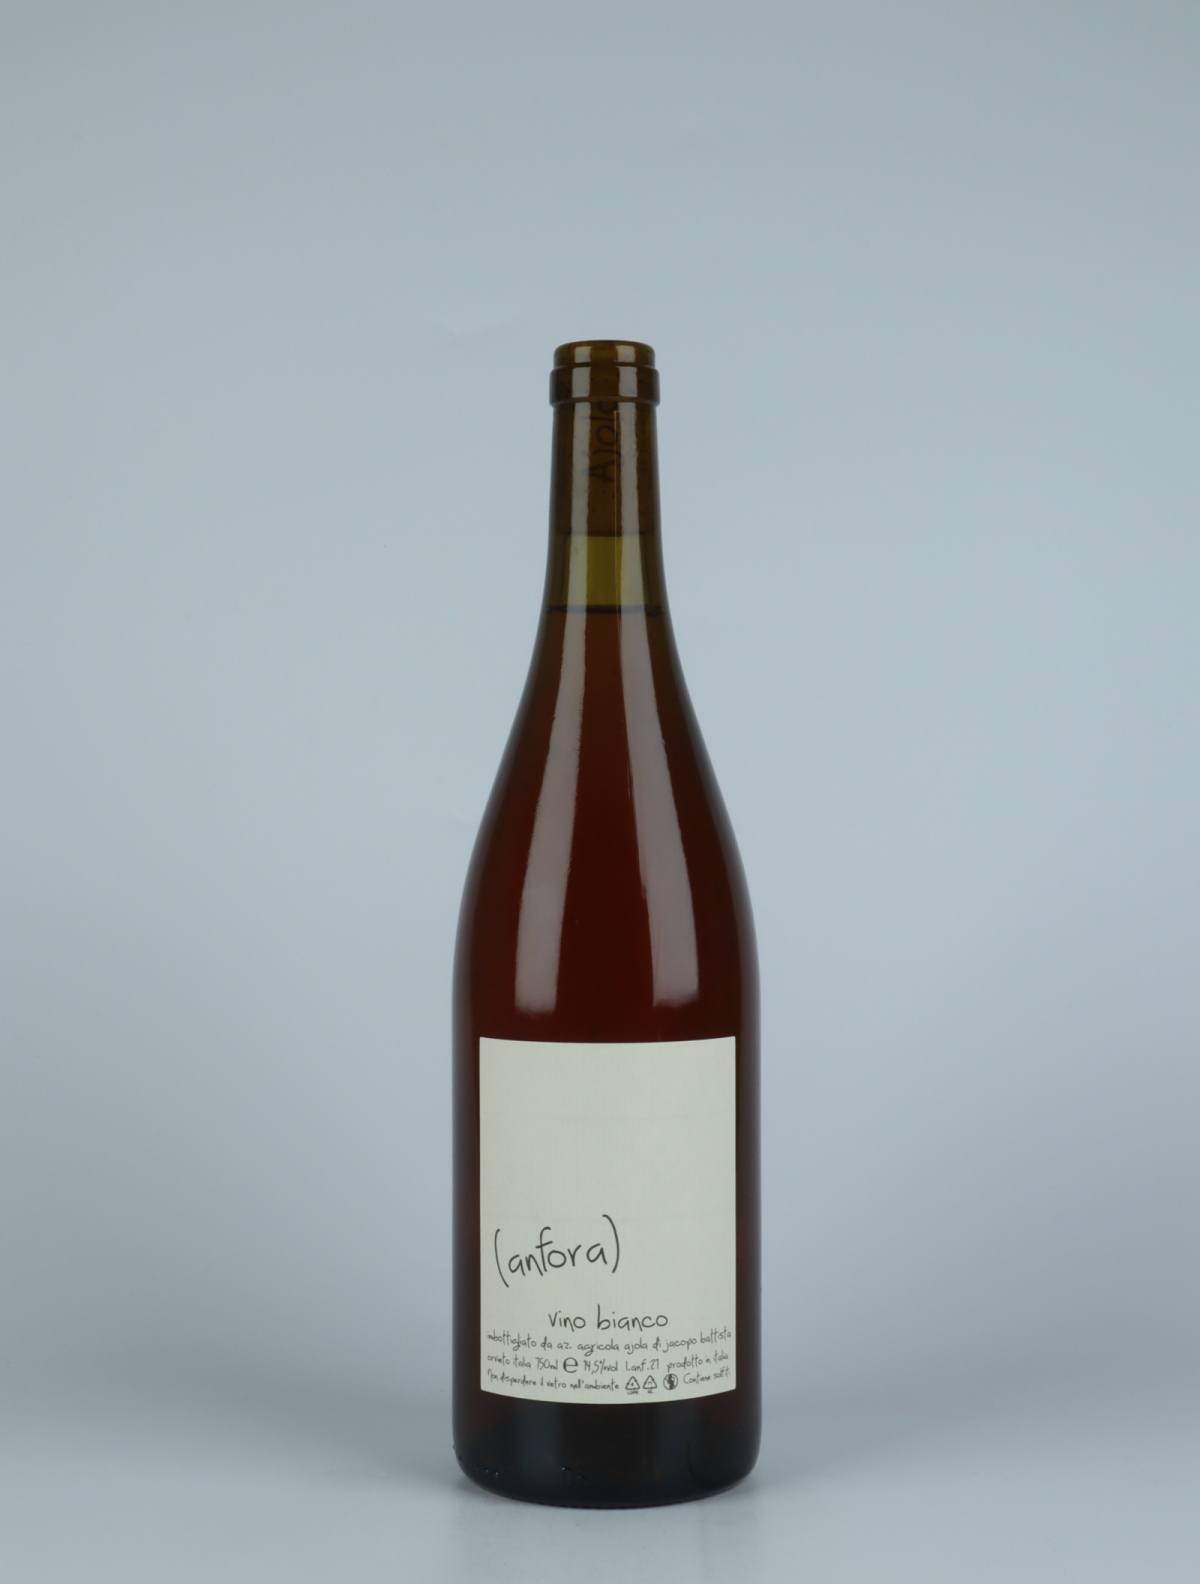 En flaske 2021 Vino Bianco Anfora Orange vin fra Ajola, Umbrien i Italien